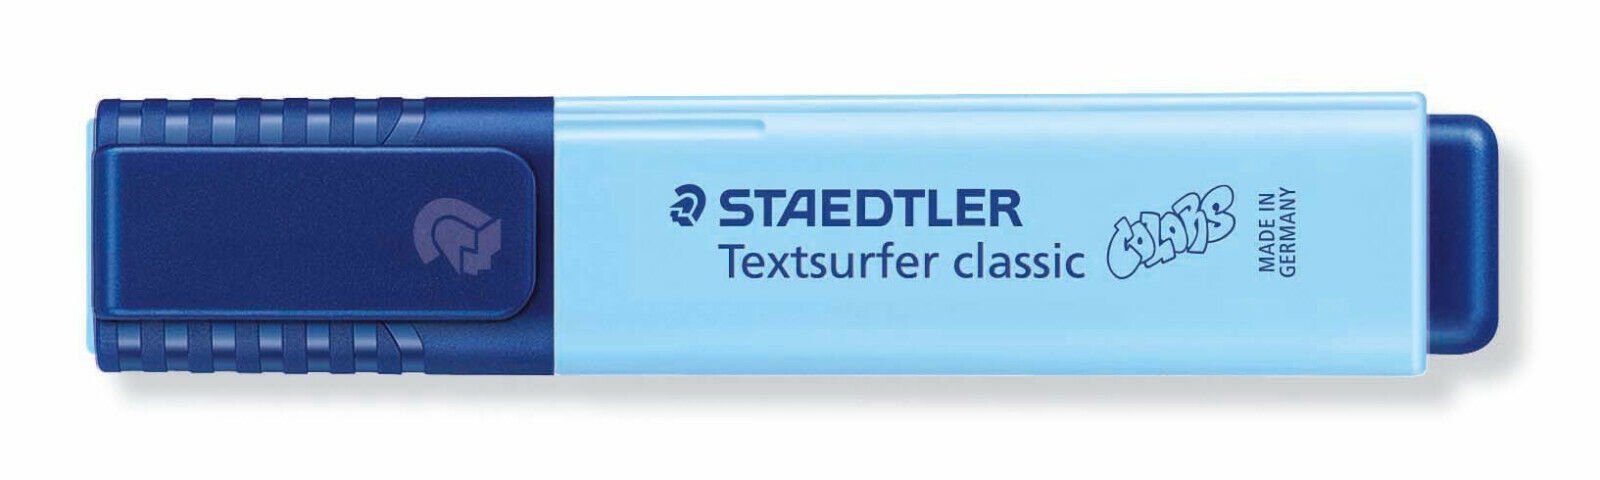 STAEDTLER Marker Staedtler Textsurfer classic colors himmelblau 364 C-305 Leuchtstift, INK JET SAFE | Marker